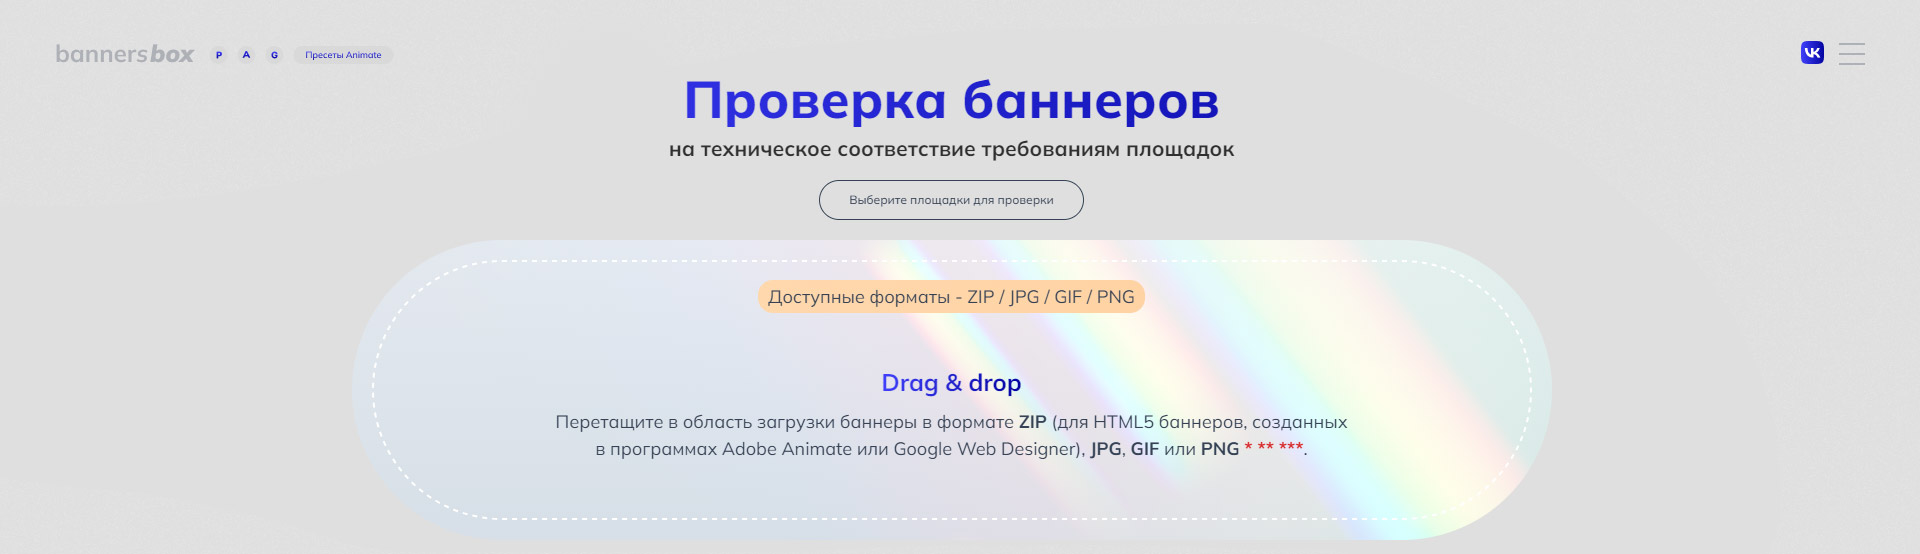 Скриншот поля Drag&Drop загрузки html баннеров для автоматической проверки баннеров на валидность техническим требованиям